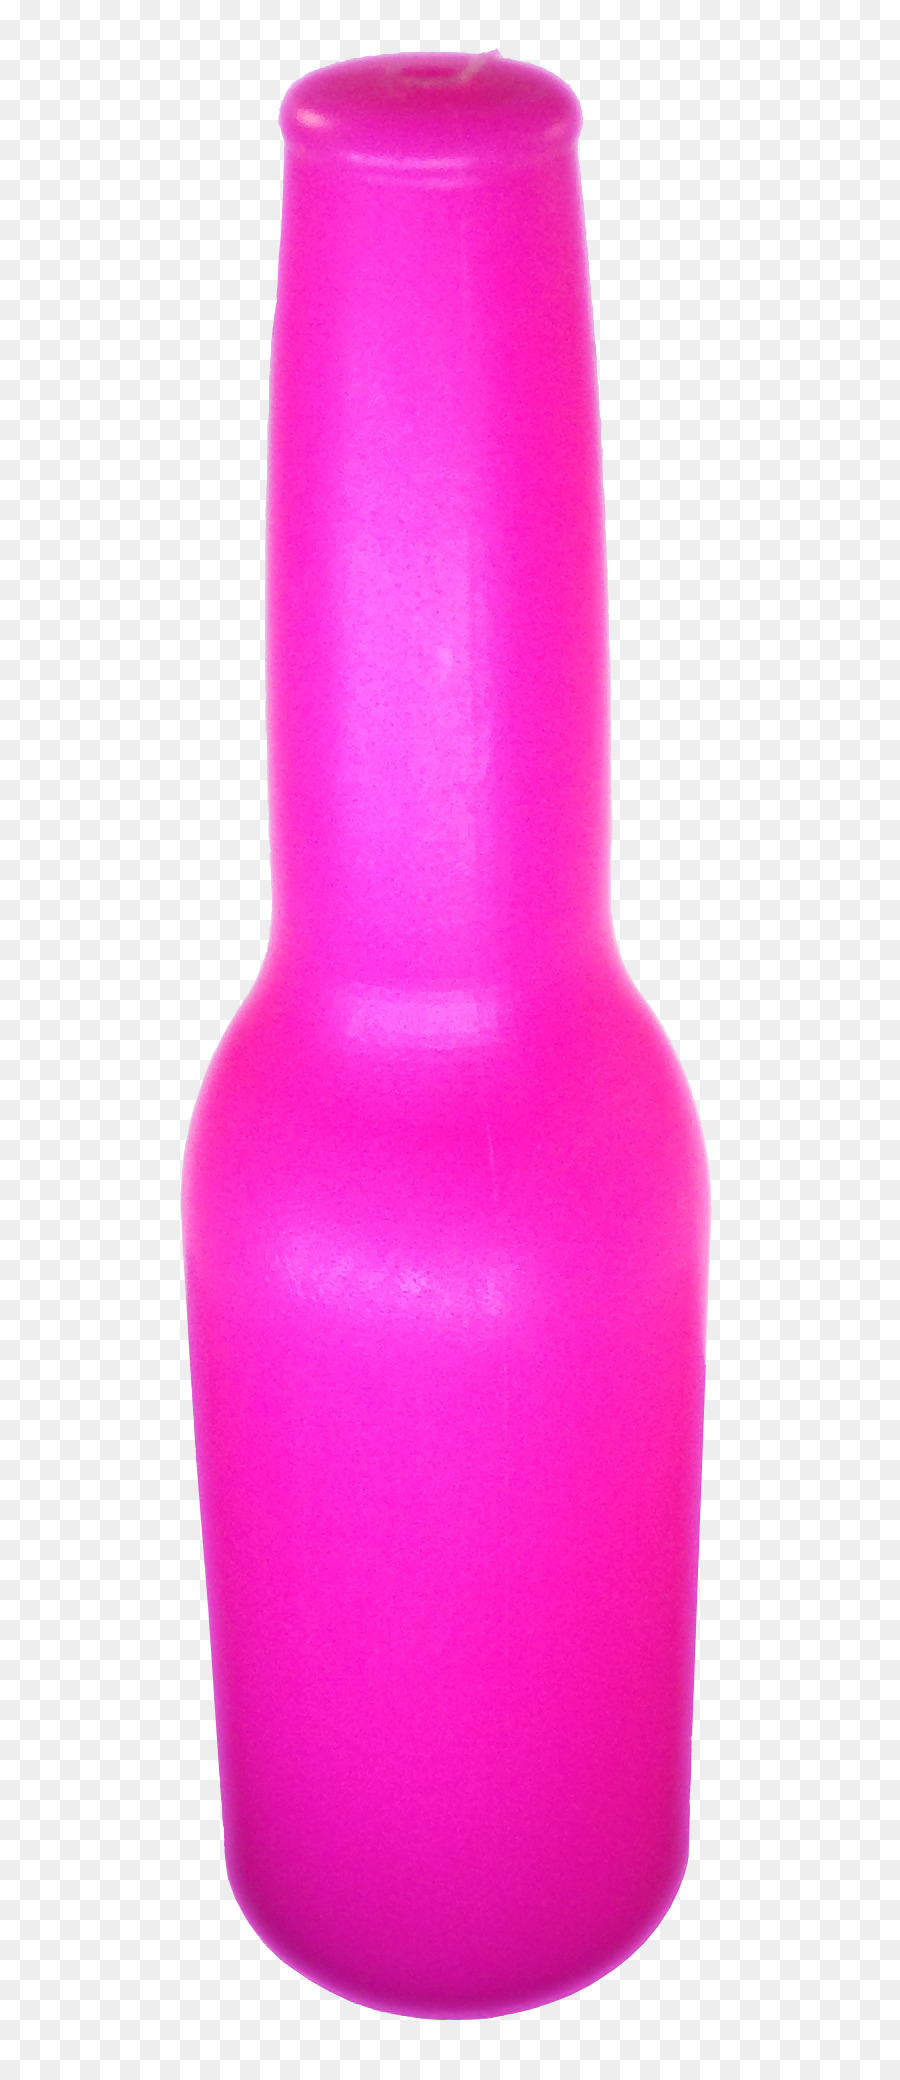 Bottiglia Di Cornici Vaso Target Di Prodotto Corporation - rosa pin bowling bottiglia di acqua